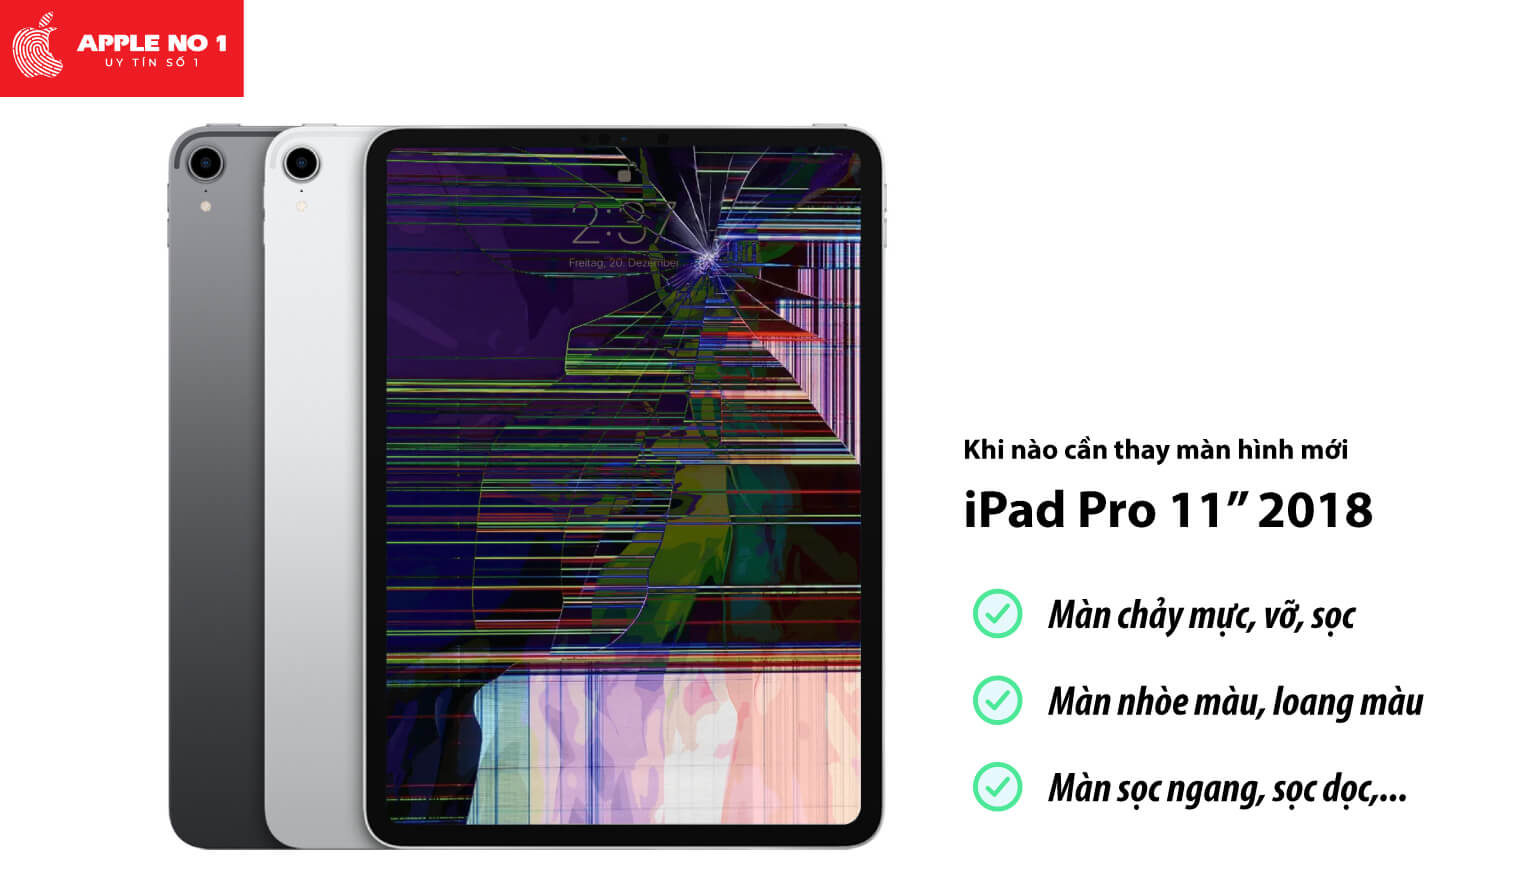 Thay màn hình iPad Pro 11 inch 2018 khi nào?